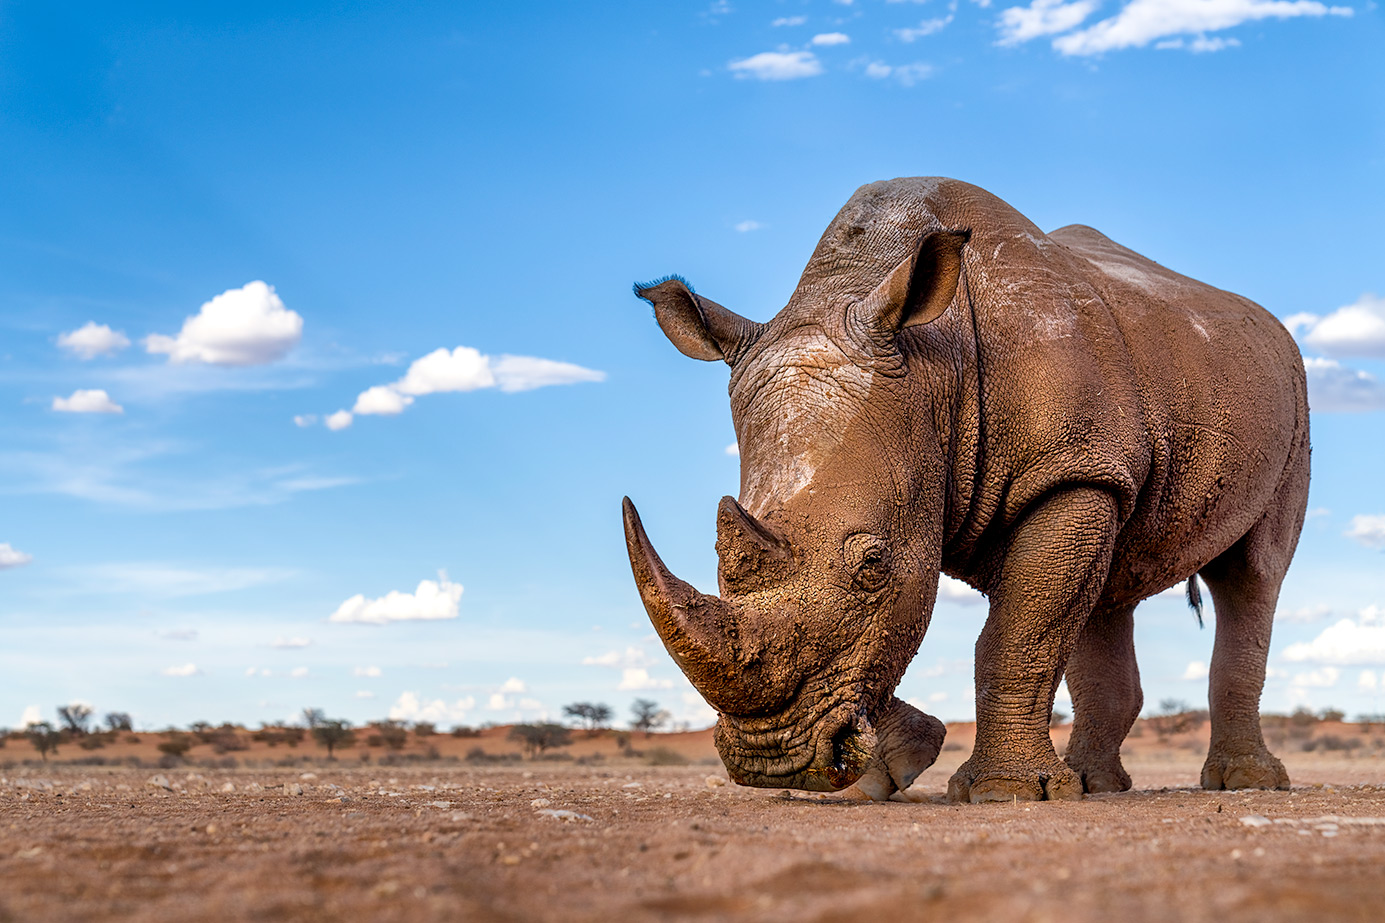 Nashorn vom Boden aus fotografiert auf einer Fotoreise durch Afrika